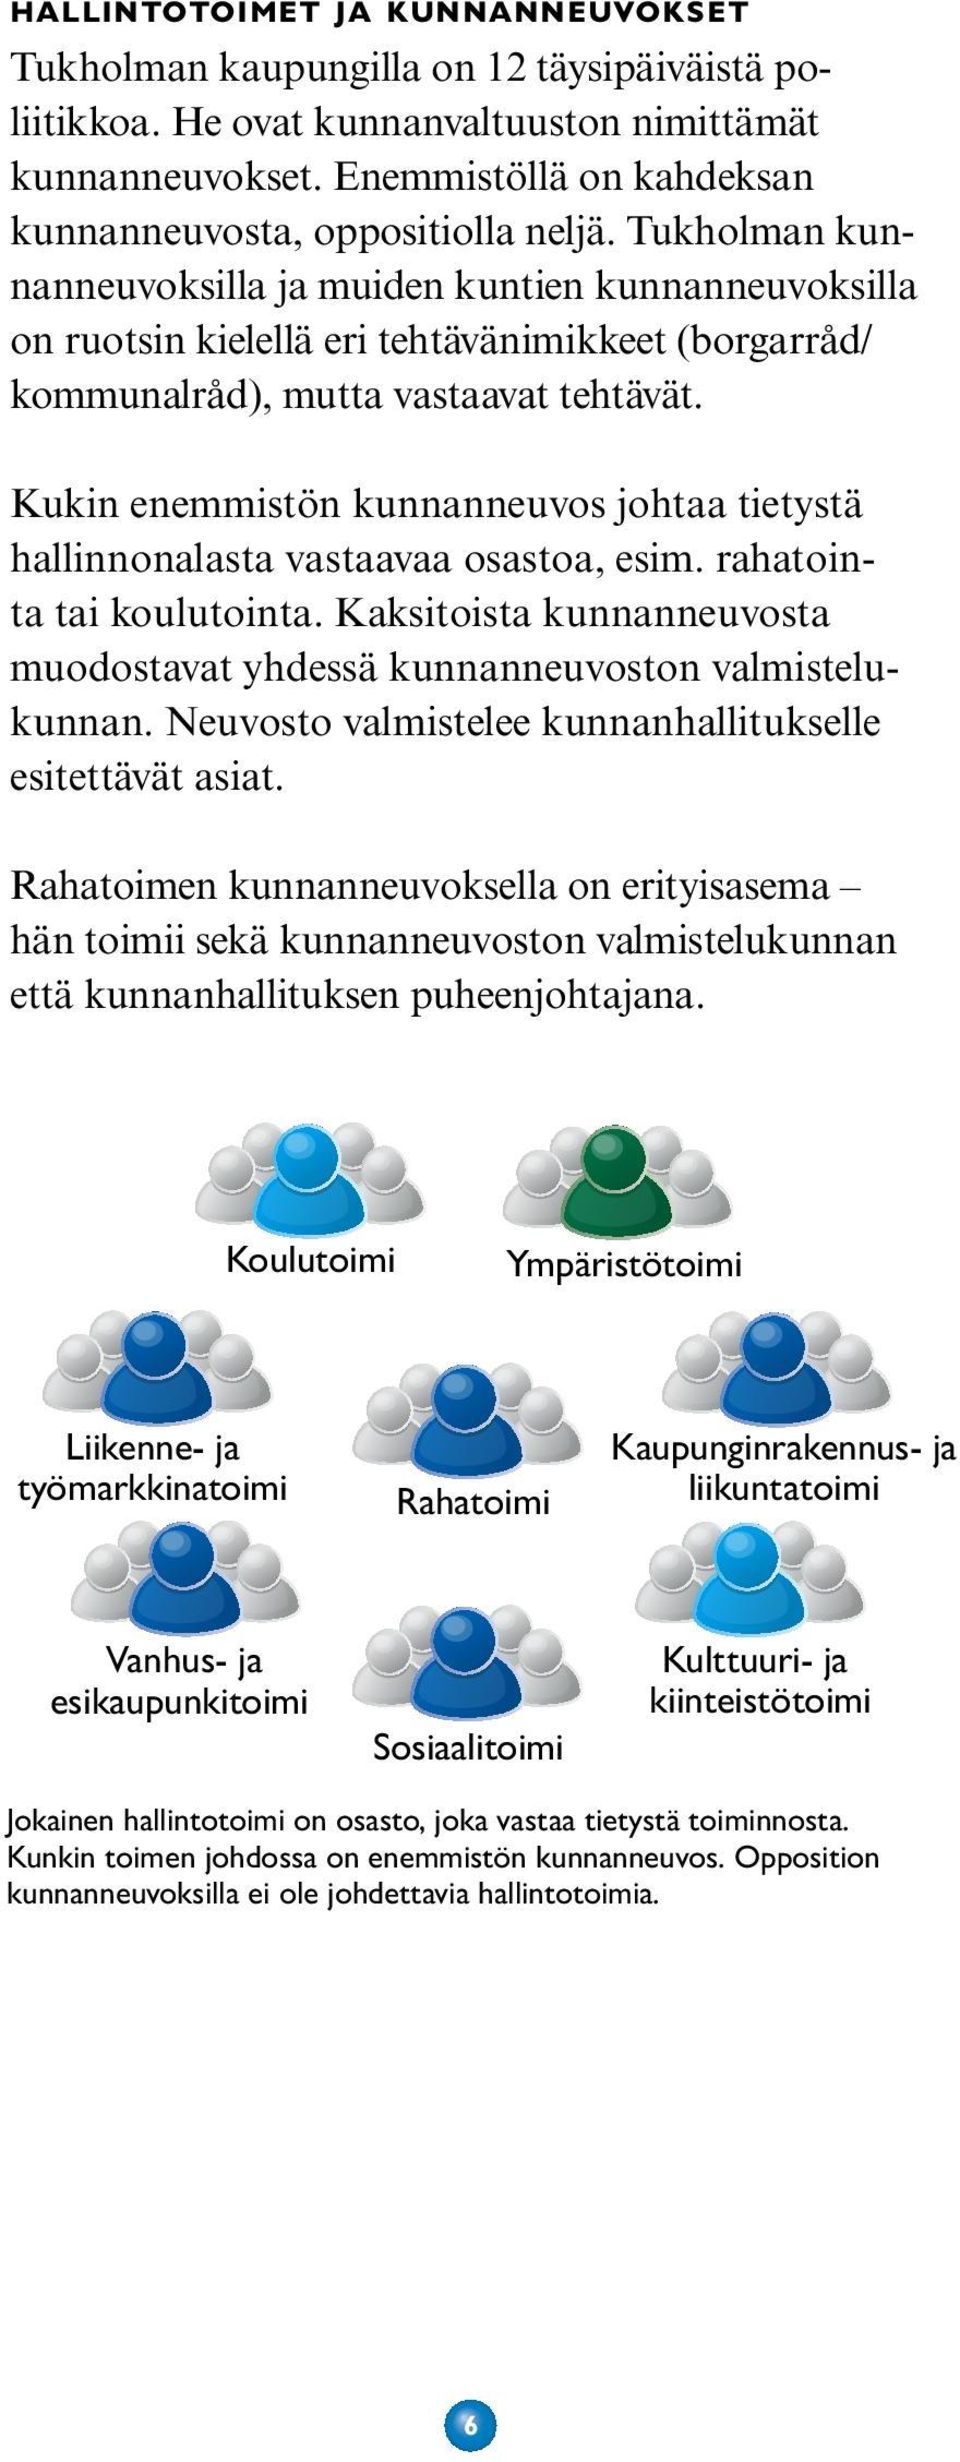 Tukholman kunnanneuvoksilla ja muiden kuntien kunnanneuvoksilla on ruotsin kielellä eri tehtävänimikkeet (borgarråd/ kommunalråd), mutta vastaavat tehtävät.